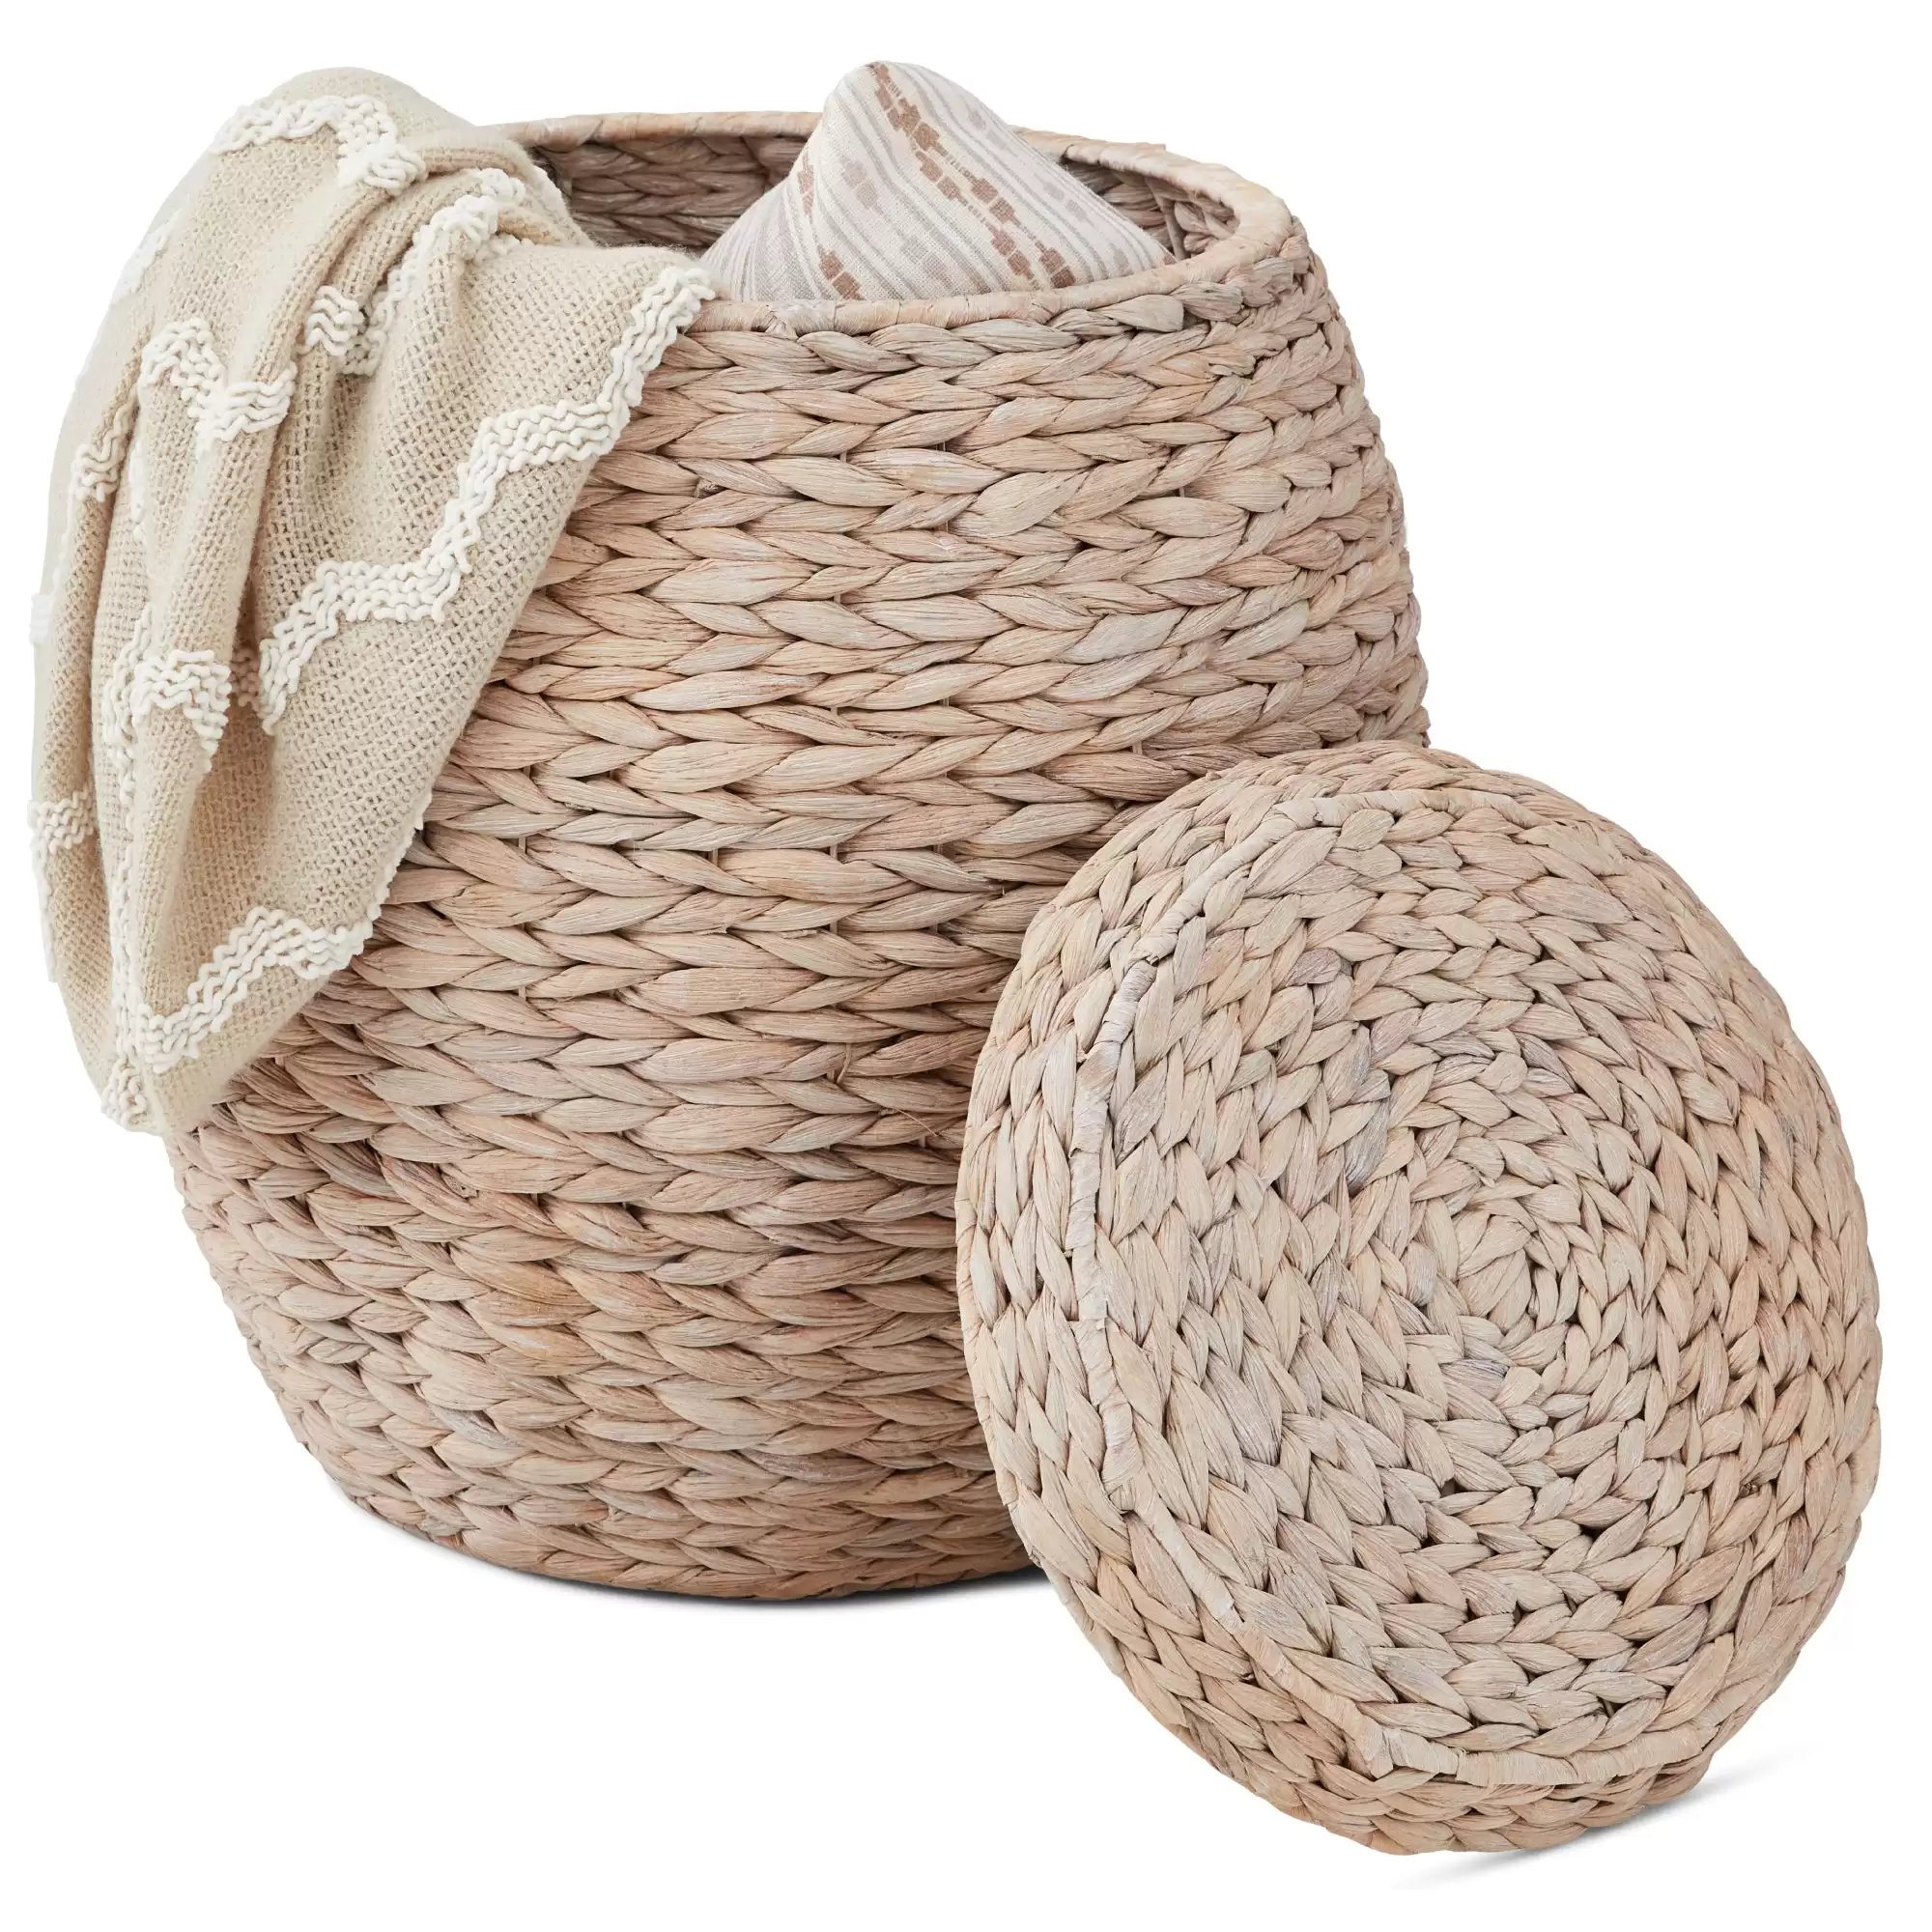 Order In Just $49.99 Vintage Hyacinth Storage Tote Basket, Organizer W/ Lid At Bestchoiceproducts